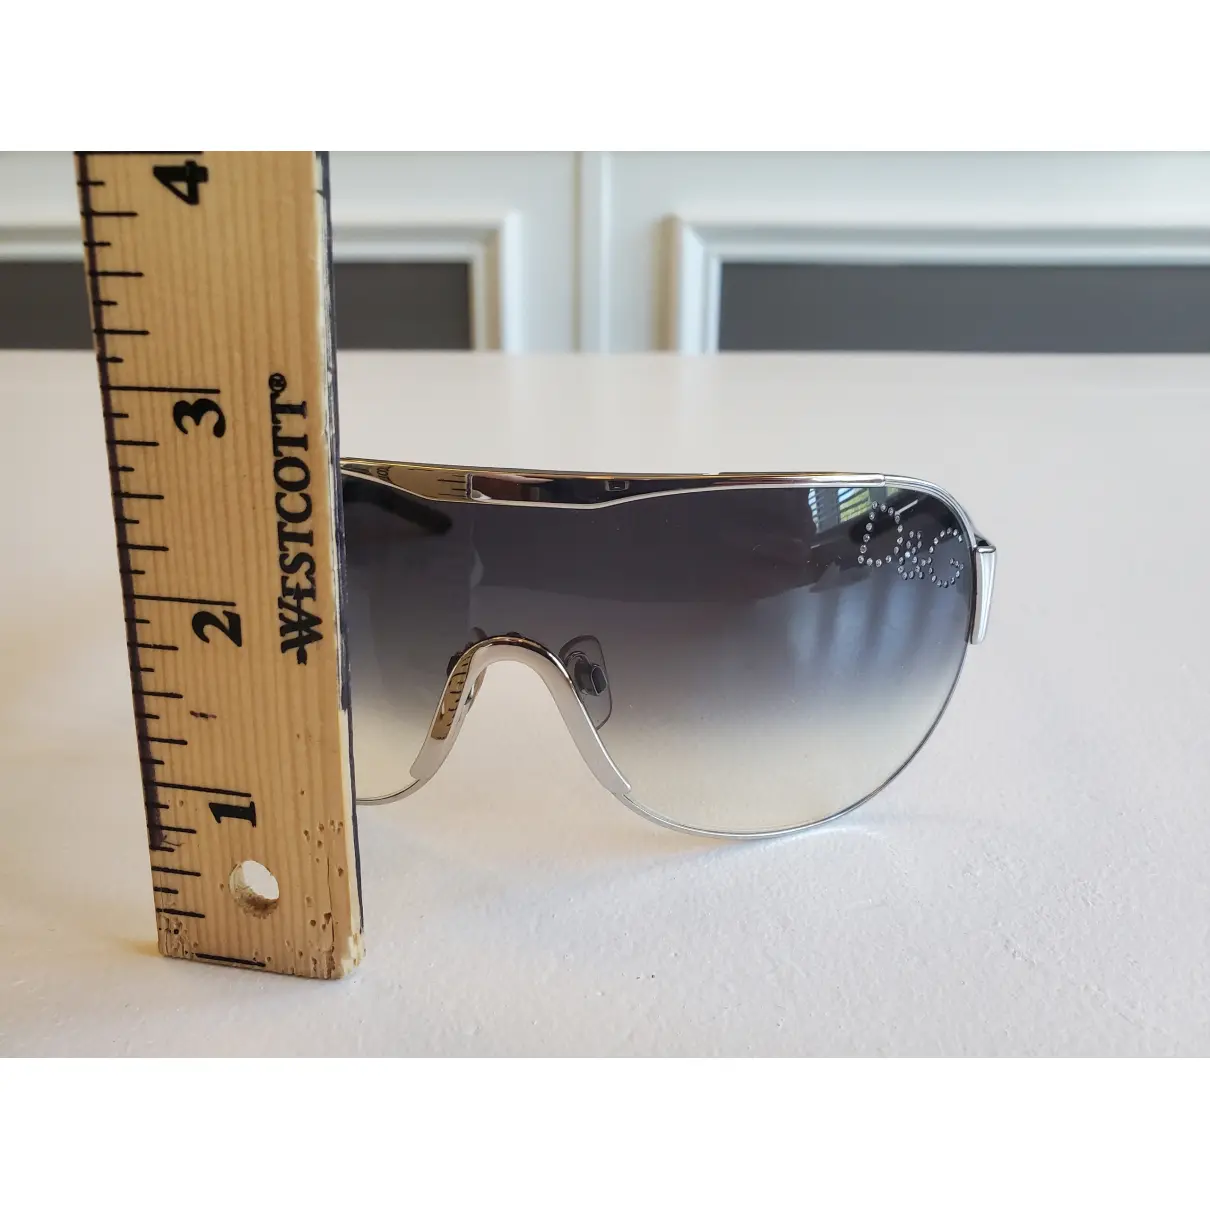 Buy D&G Aviator sunglasses online